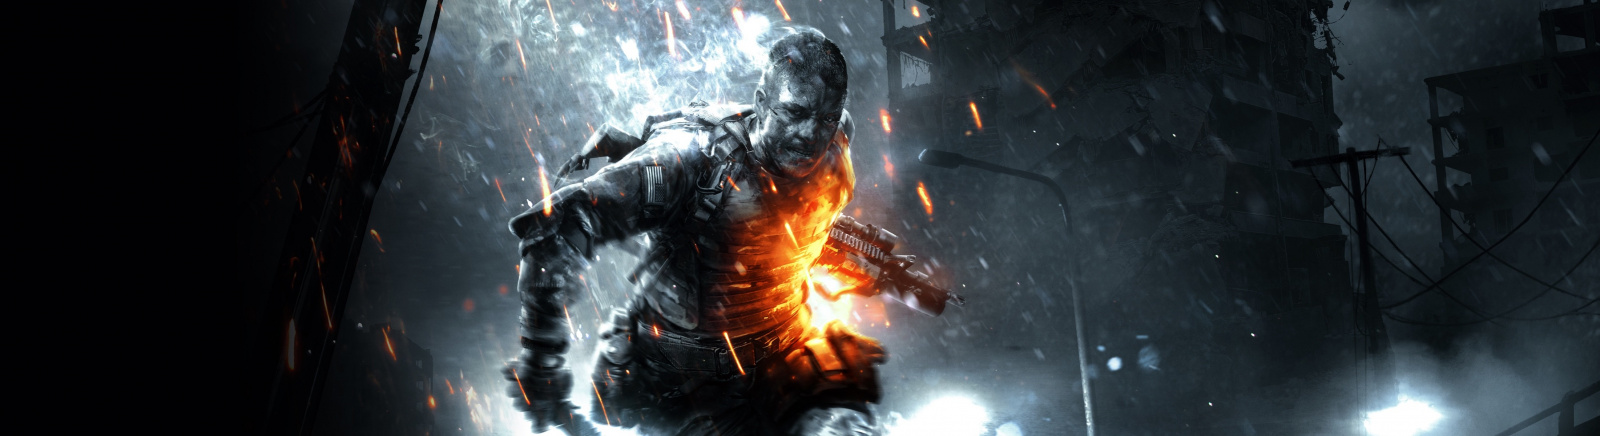 Дата выхода Battlefield 3: Aftermath  на PC, PS3 и Xbox 360 в России и во всем мире